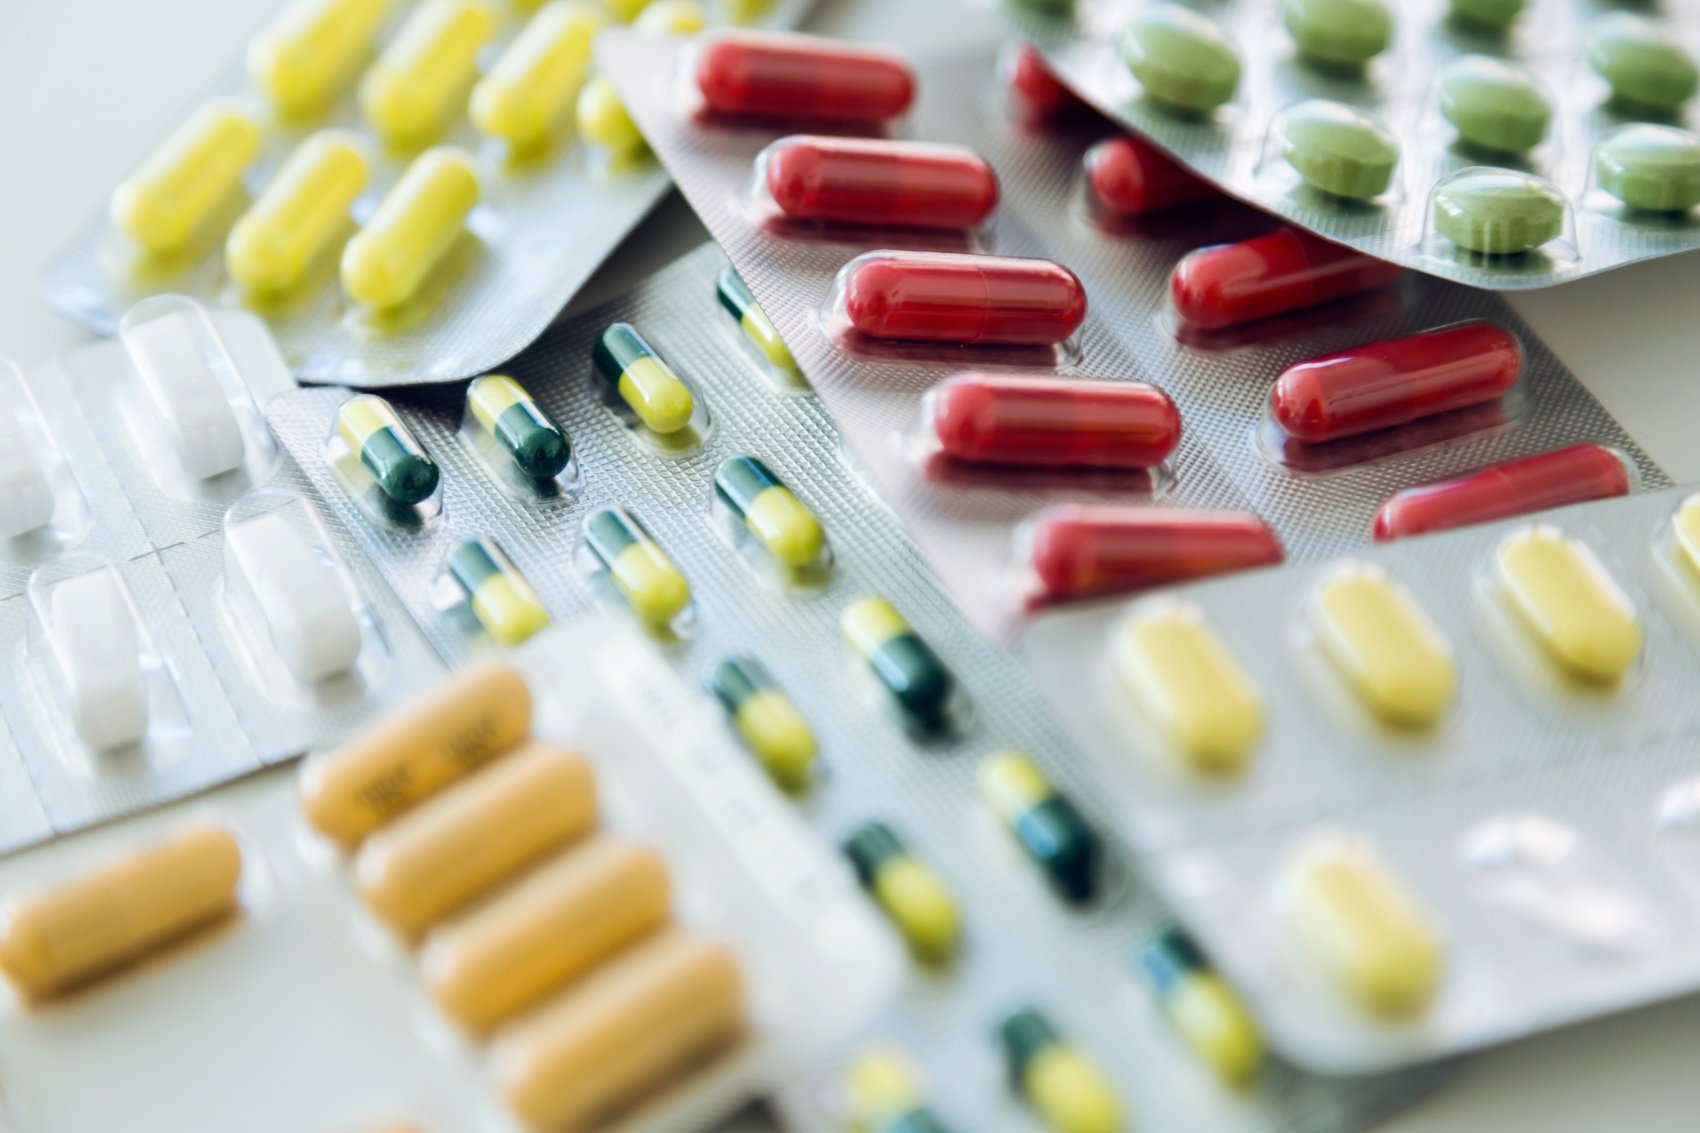 Farmaci: si possono spezzare le pastiglie prima di ingerirle